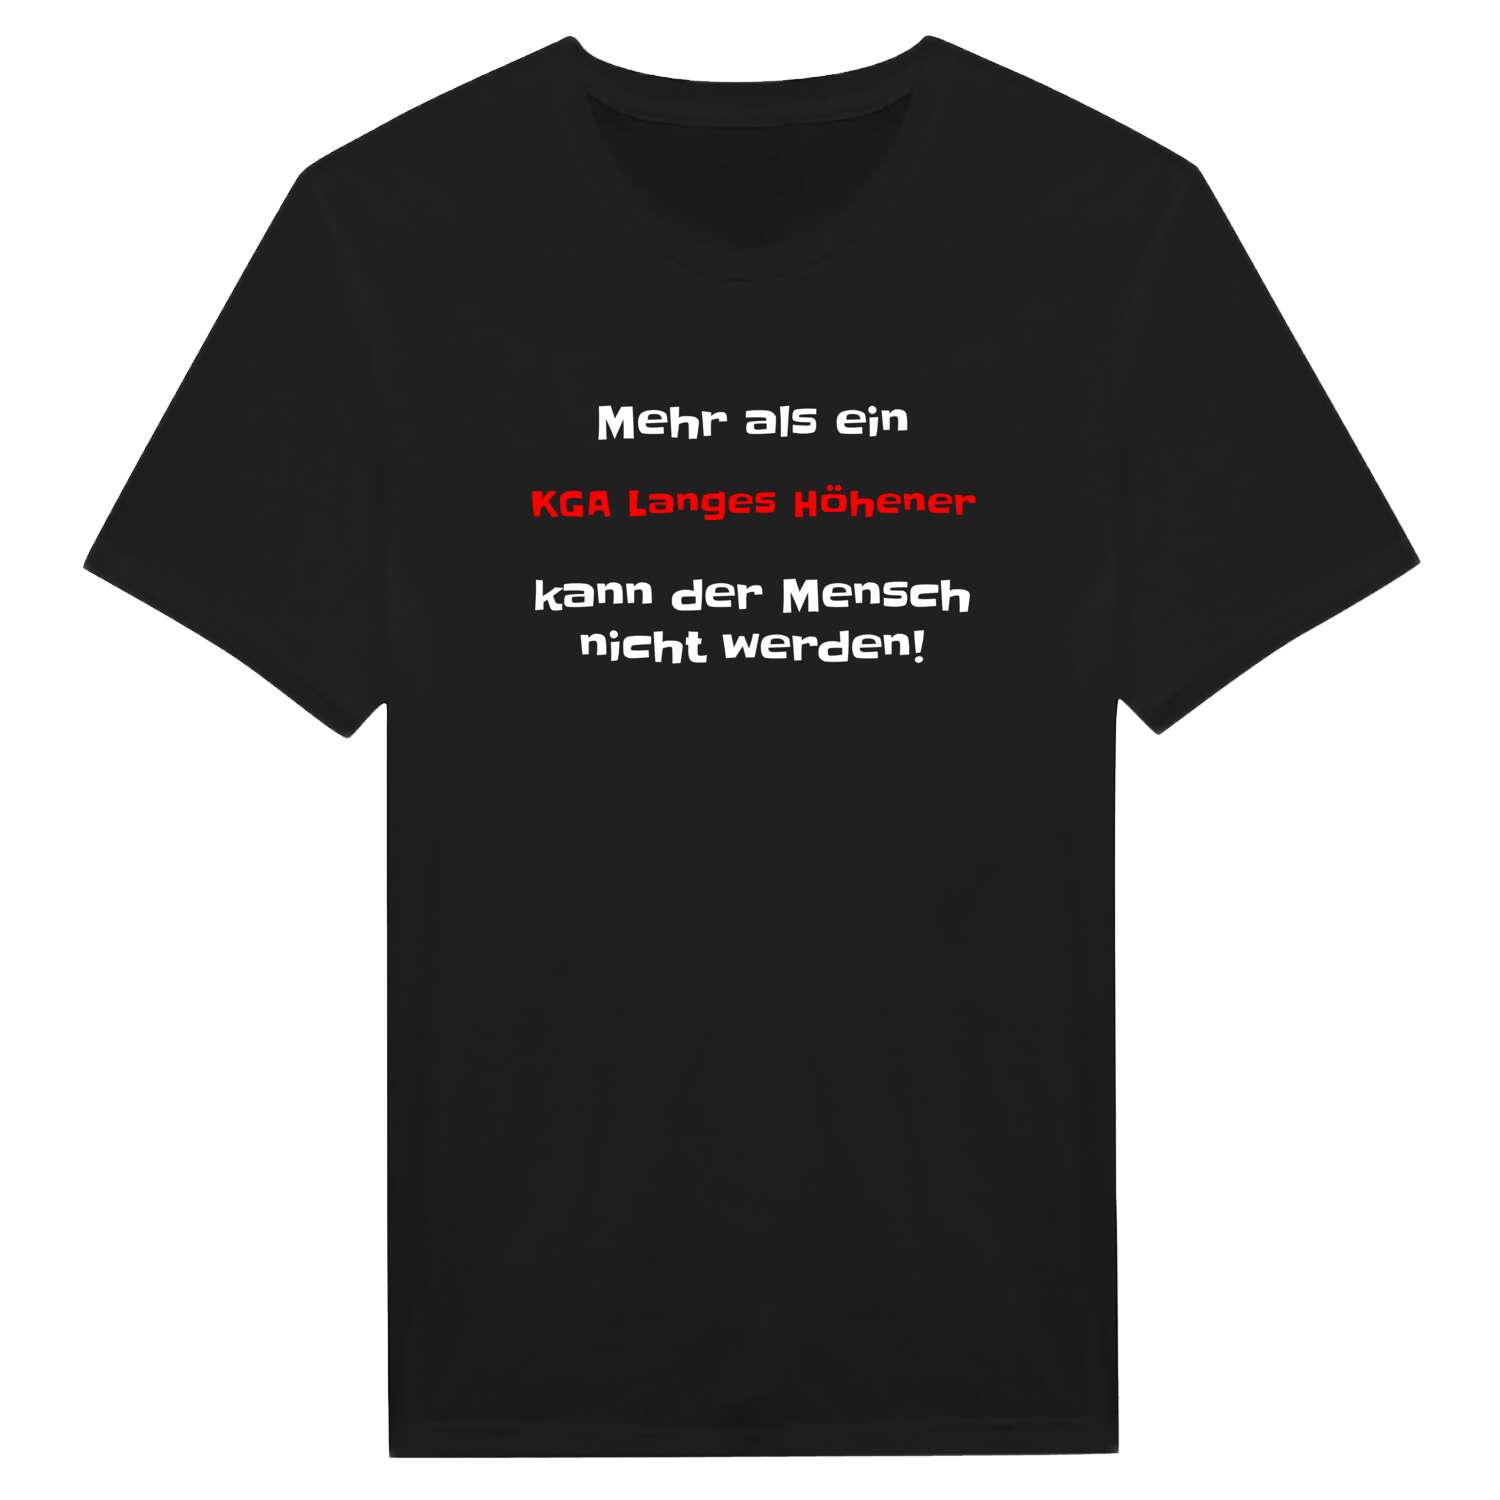 KGA Langes Höhe T-Shirt »Mehr als ein«